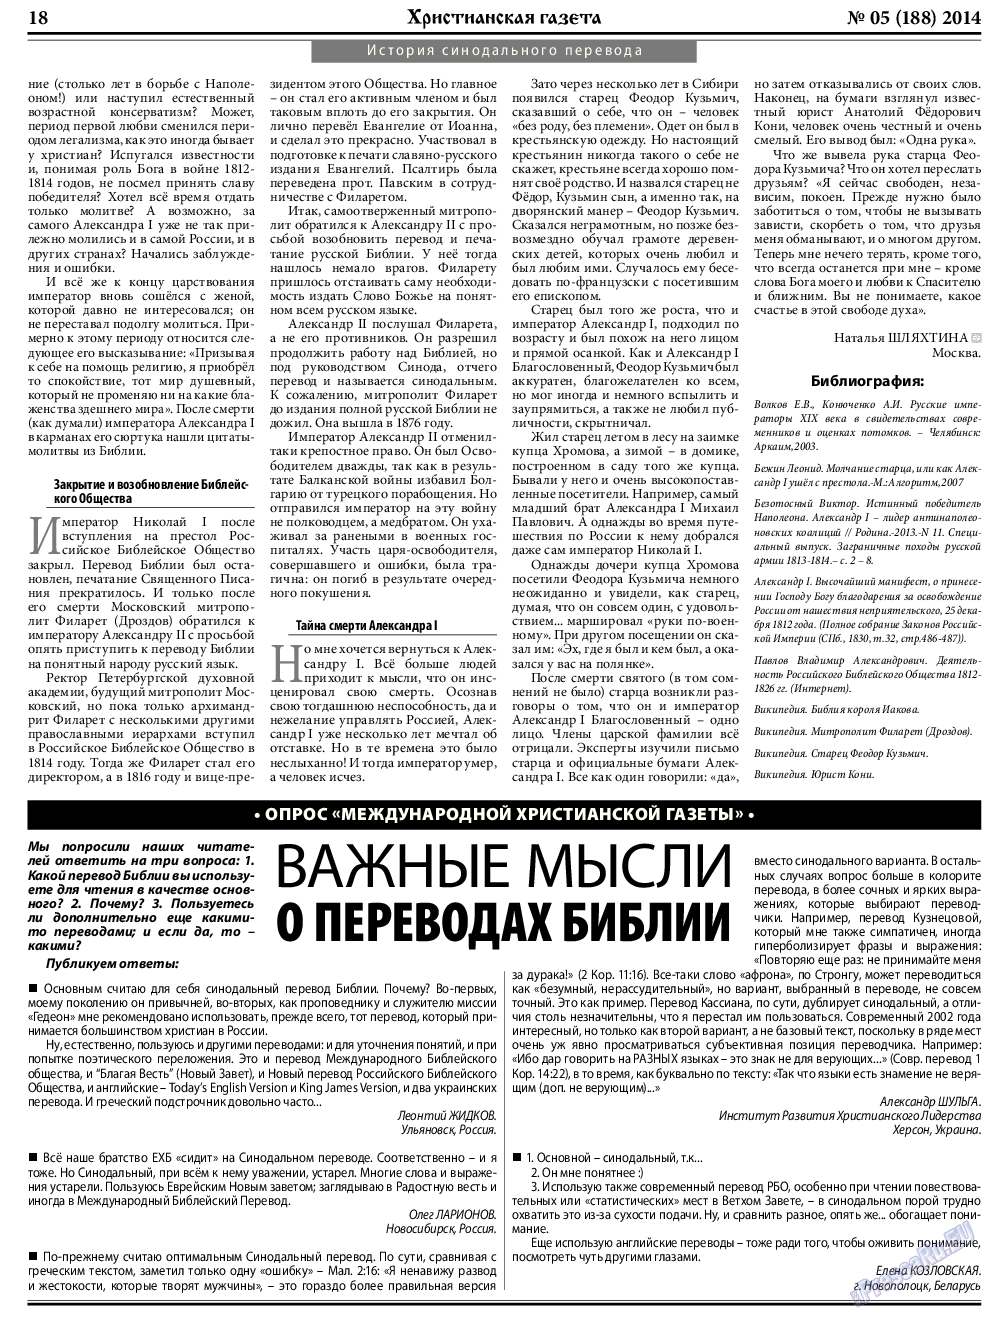 Христианская газета, газета. 2014 №5 стр.26